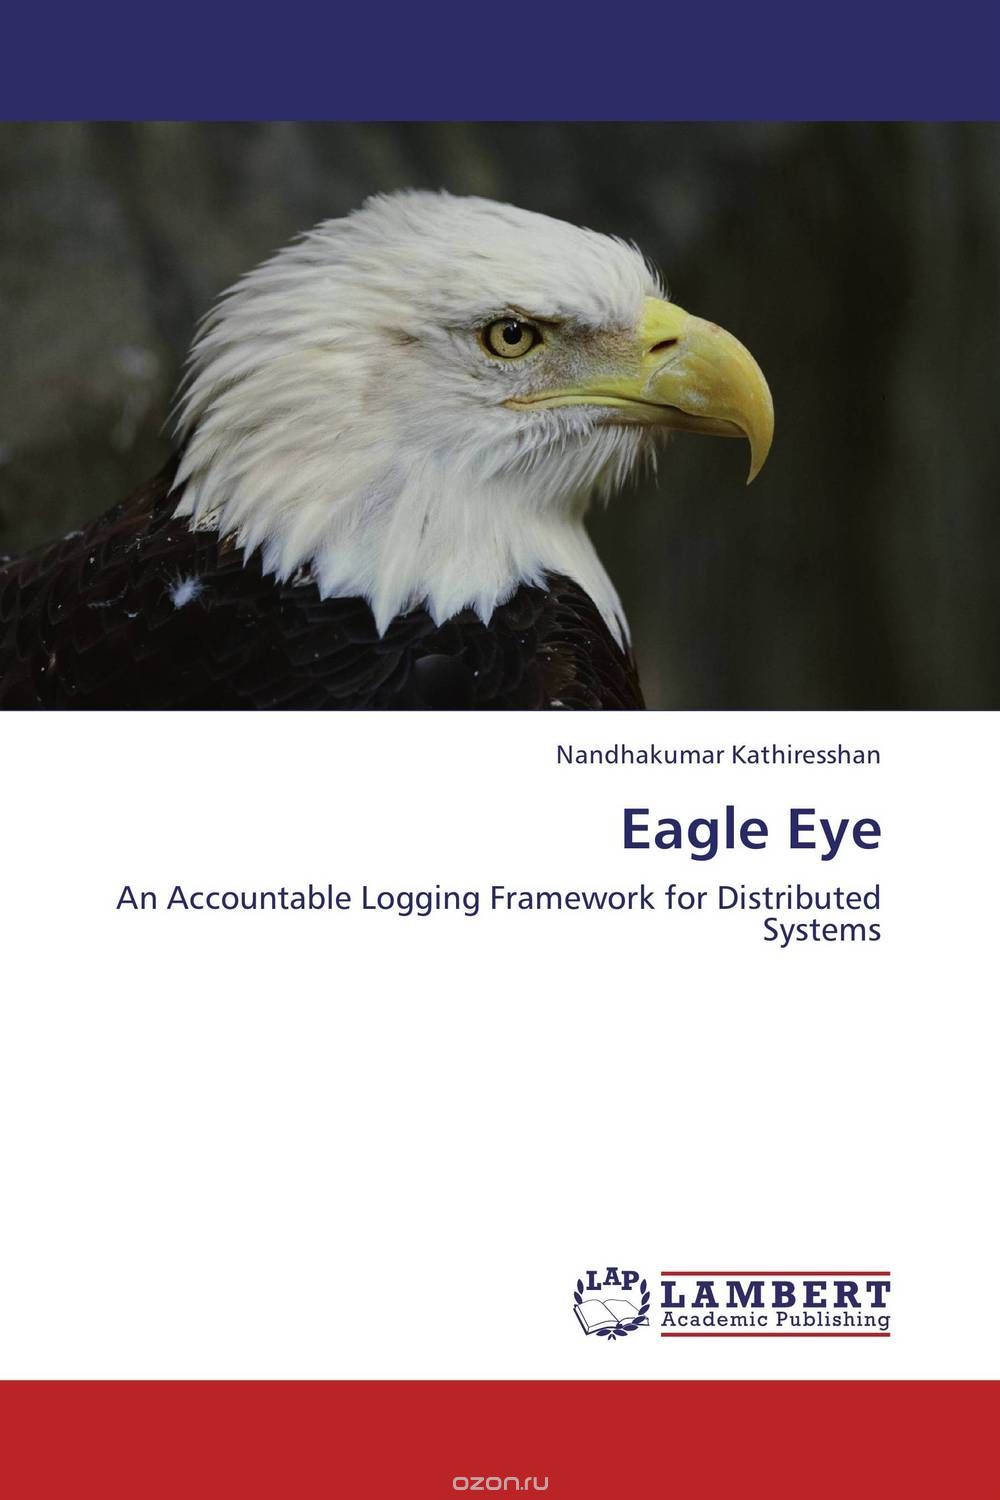 Скачать книгу "Eagle Eye"